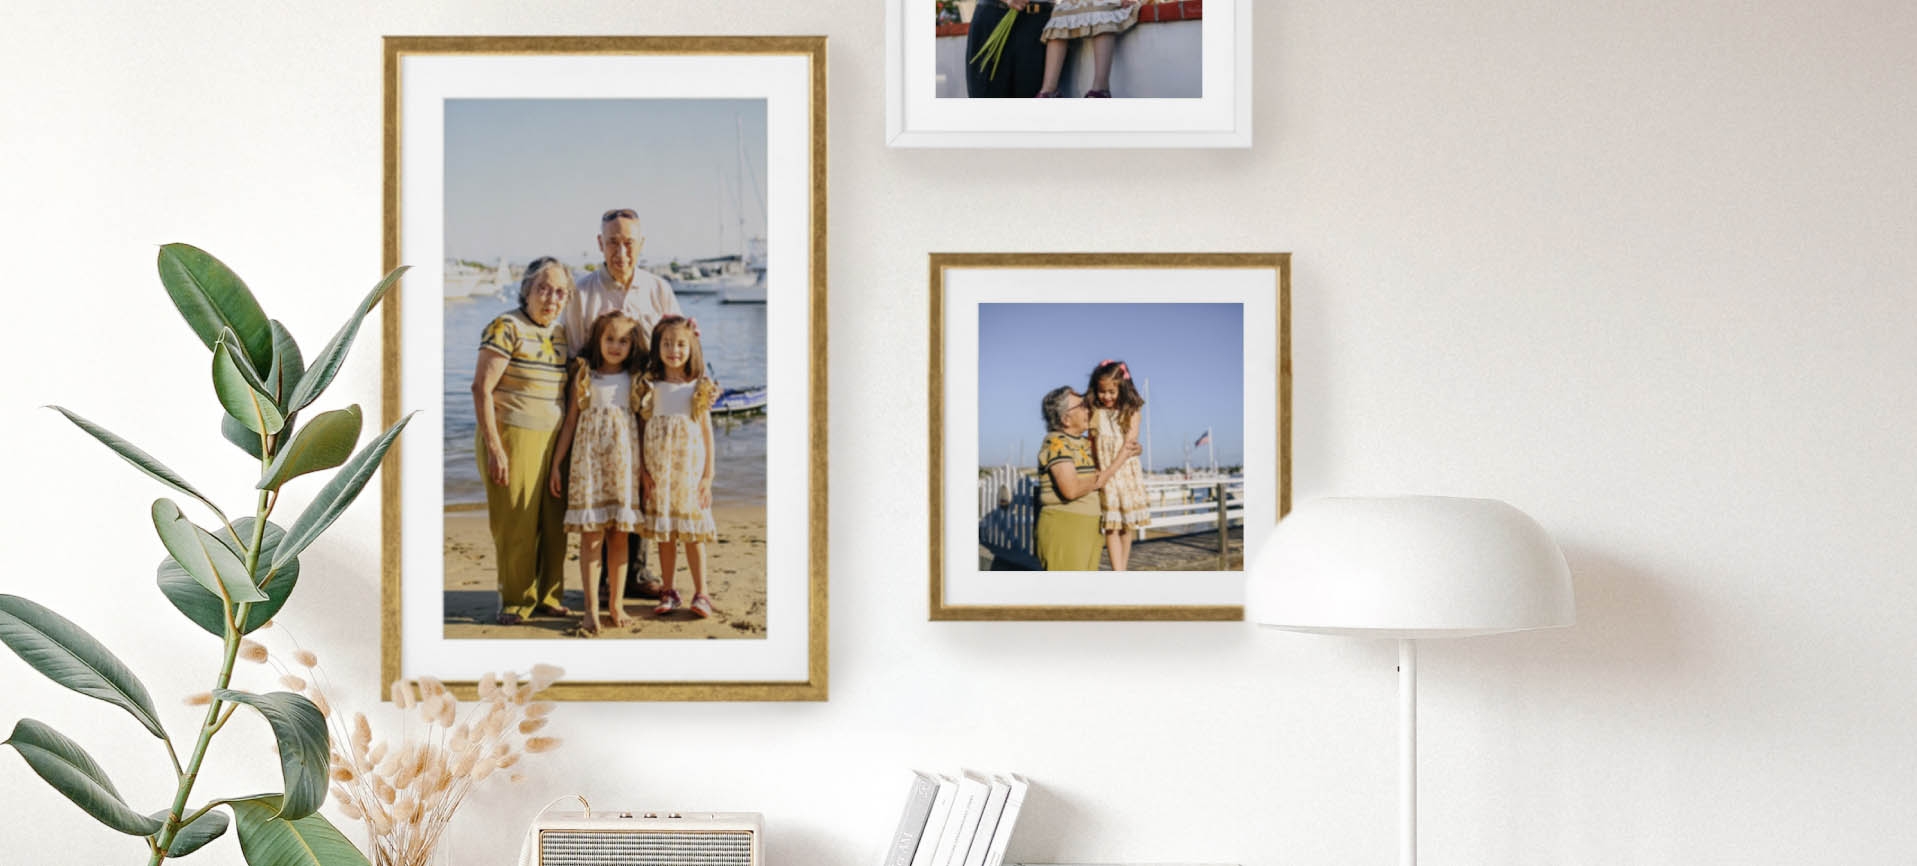 molduras de parede com fotos em família